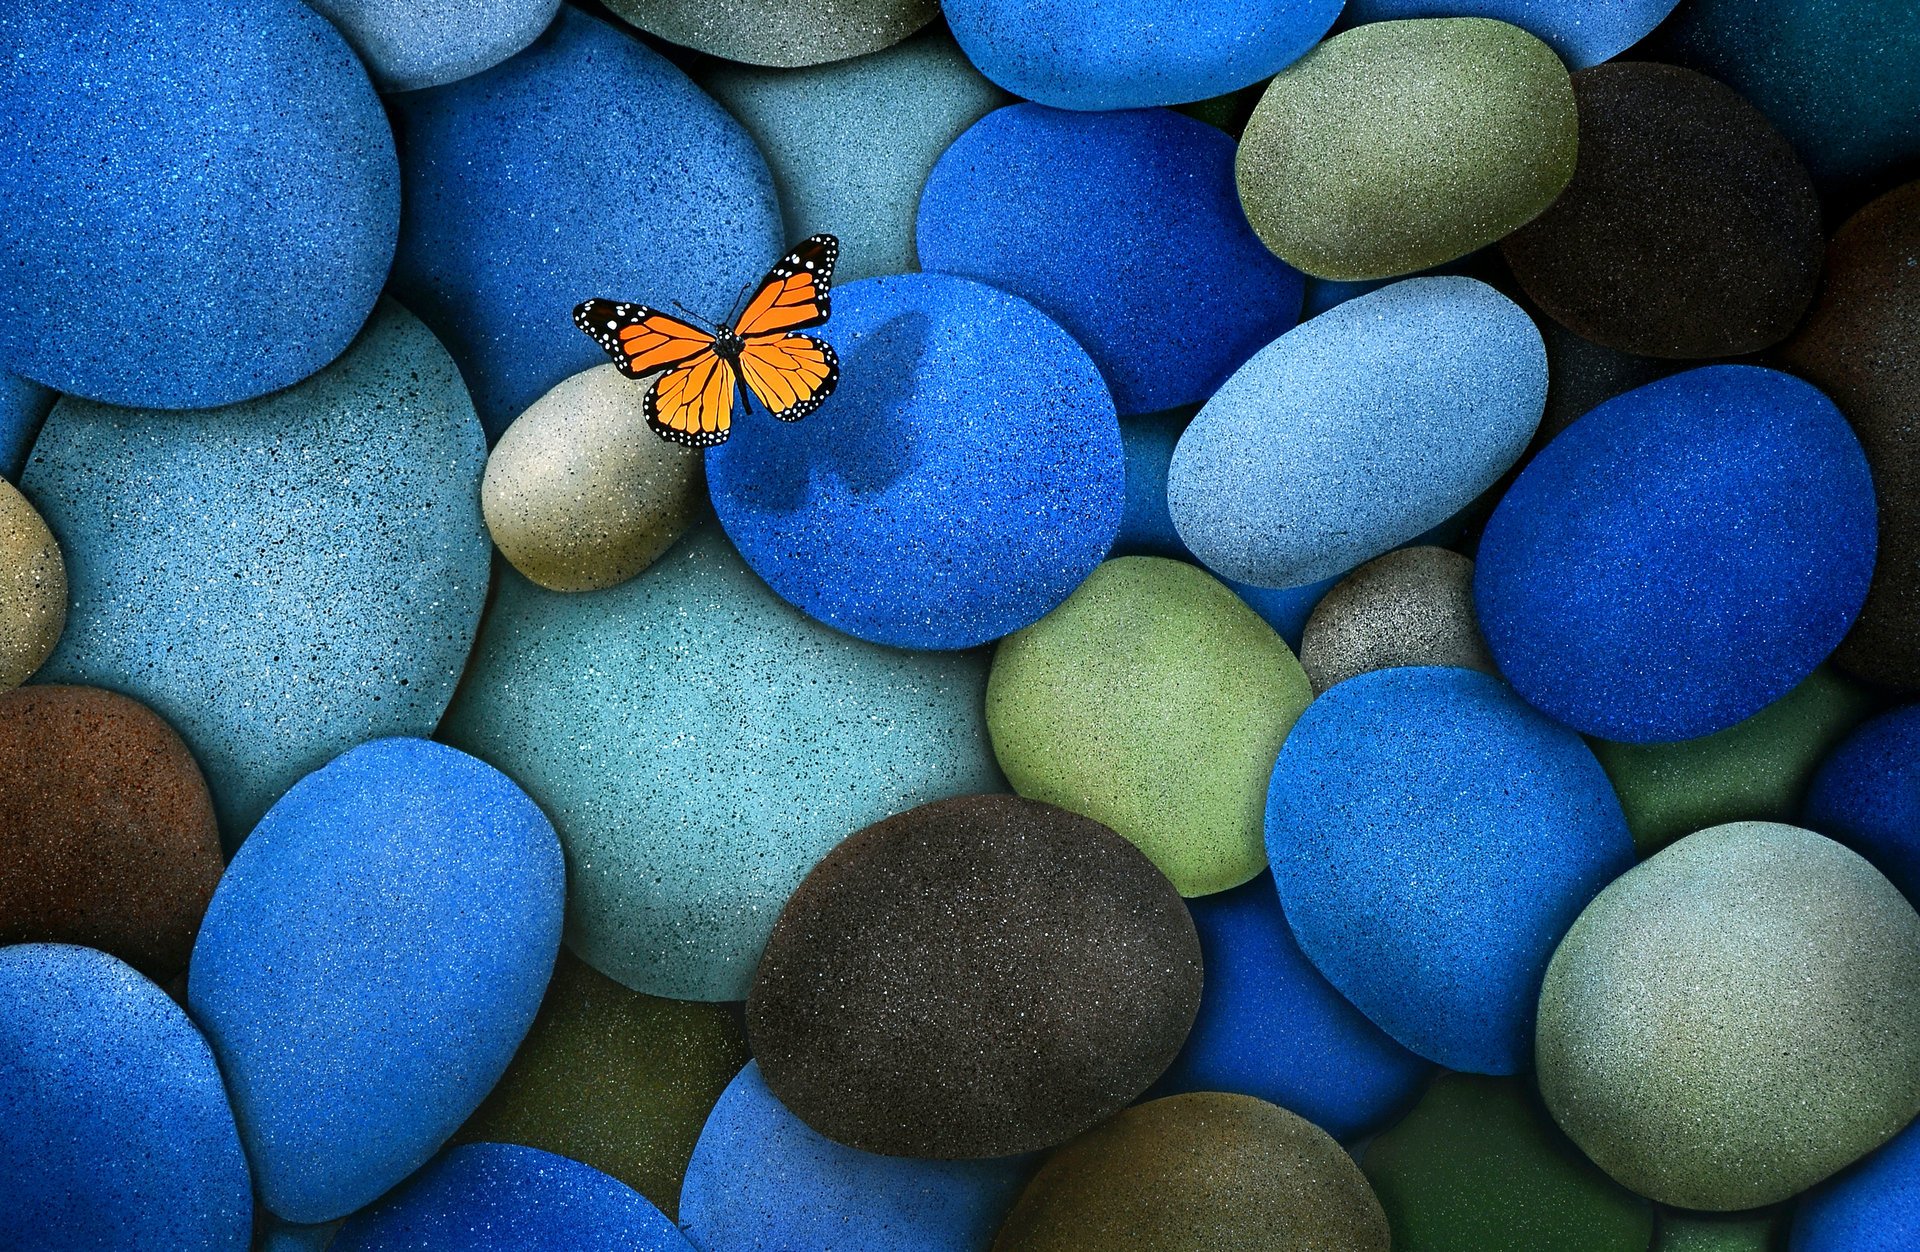 Цветные камеи с тенью бабочки